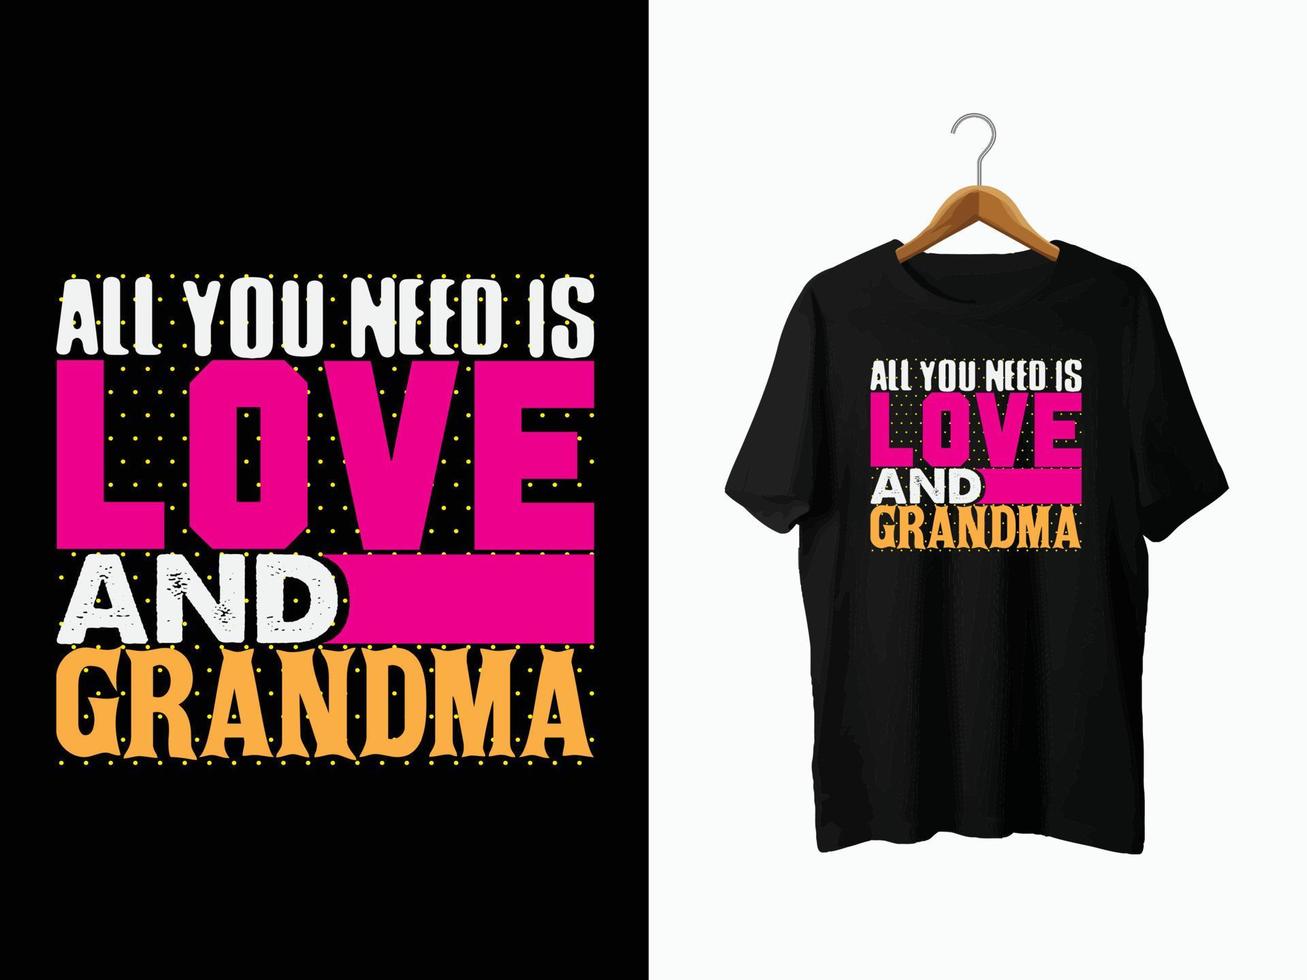 grootmoeder t-shirt ontwerp vector